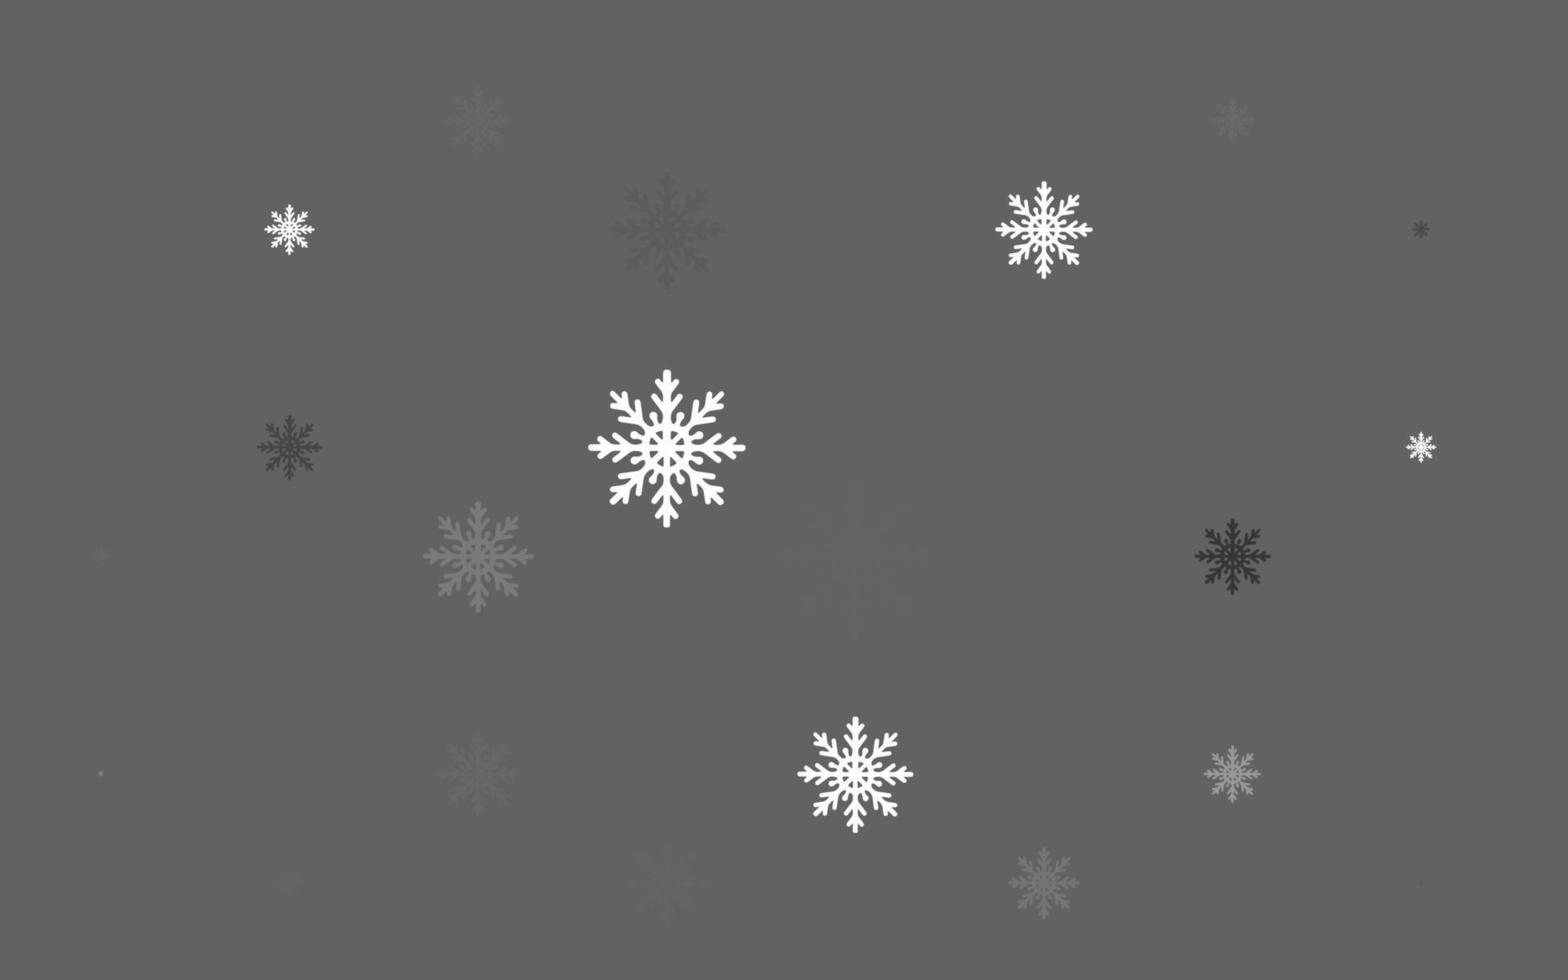 hellsilberne, graue Vektorabdeckung mit schönen Schneeflocken. vektor